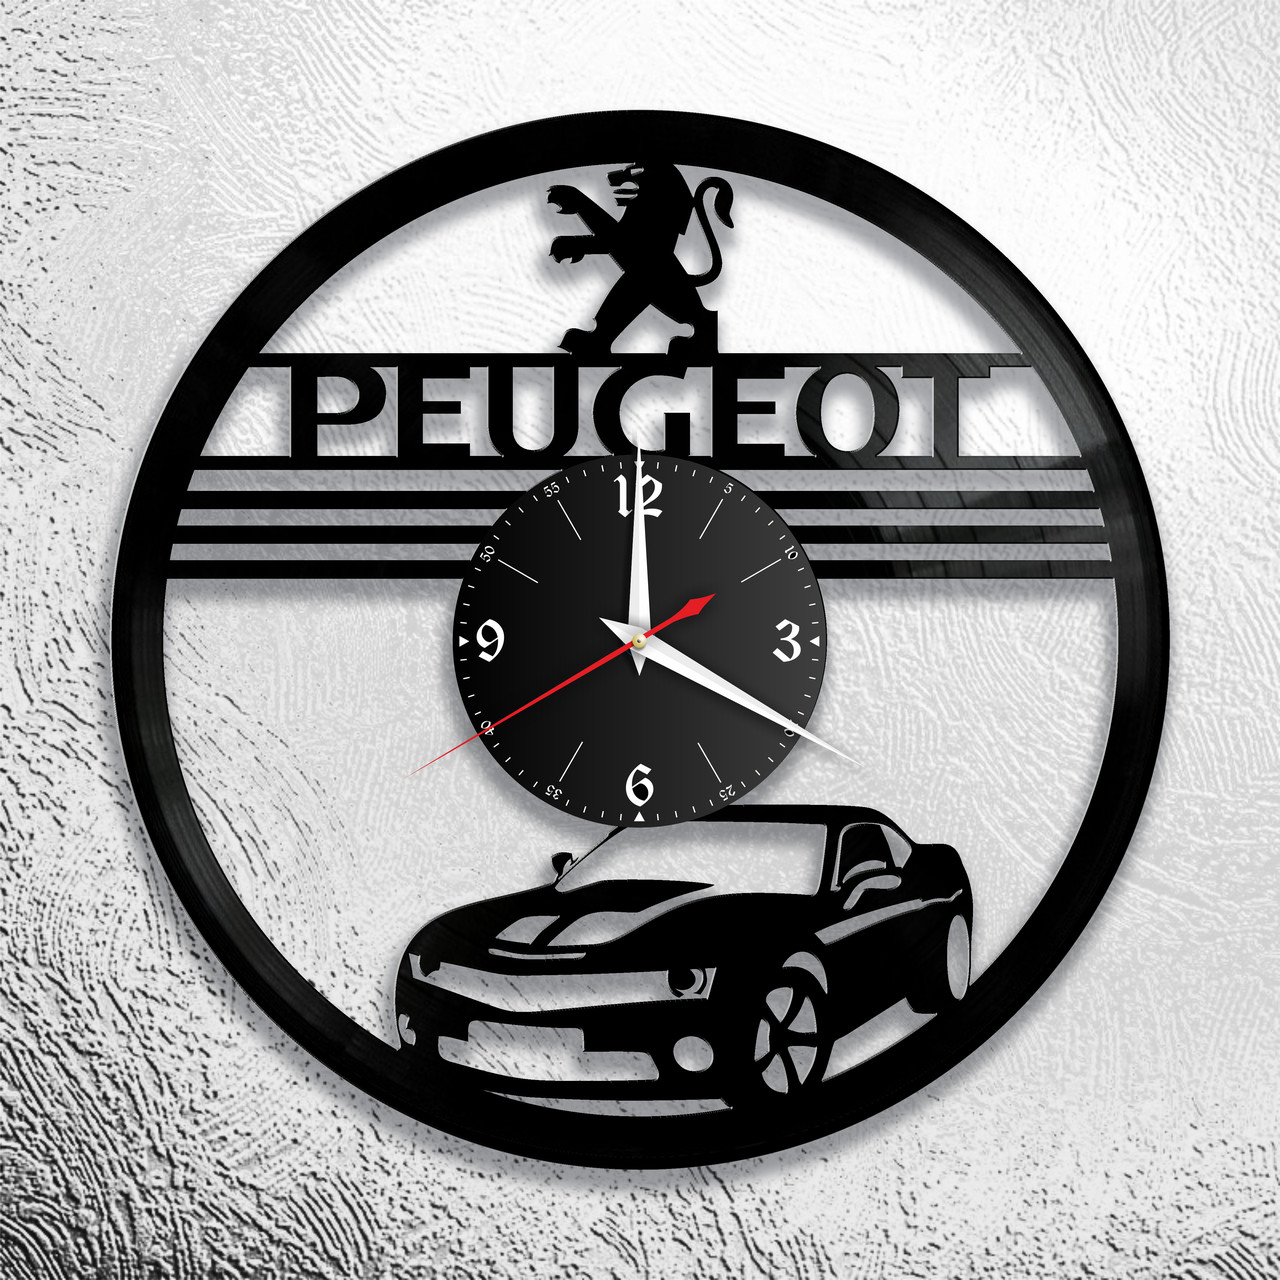 Часы из виниловой пластинки  "Peugeot" версия 1, фото 1